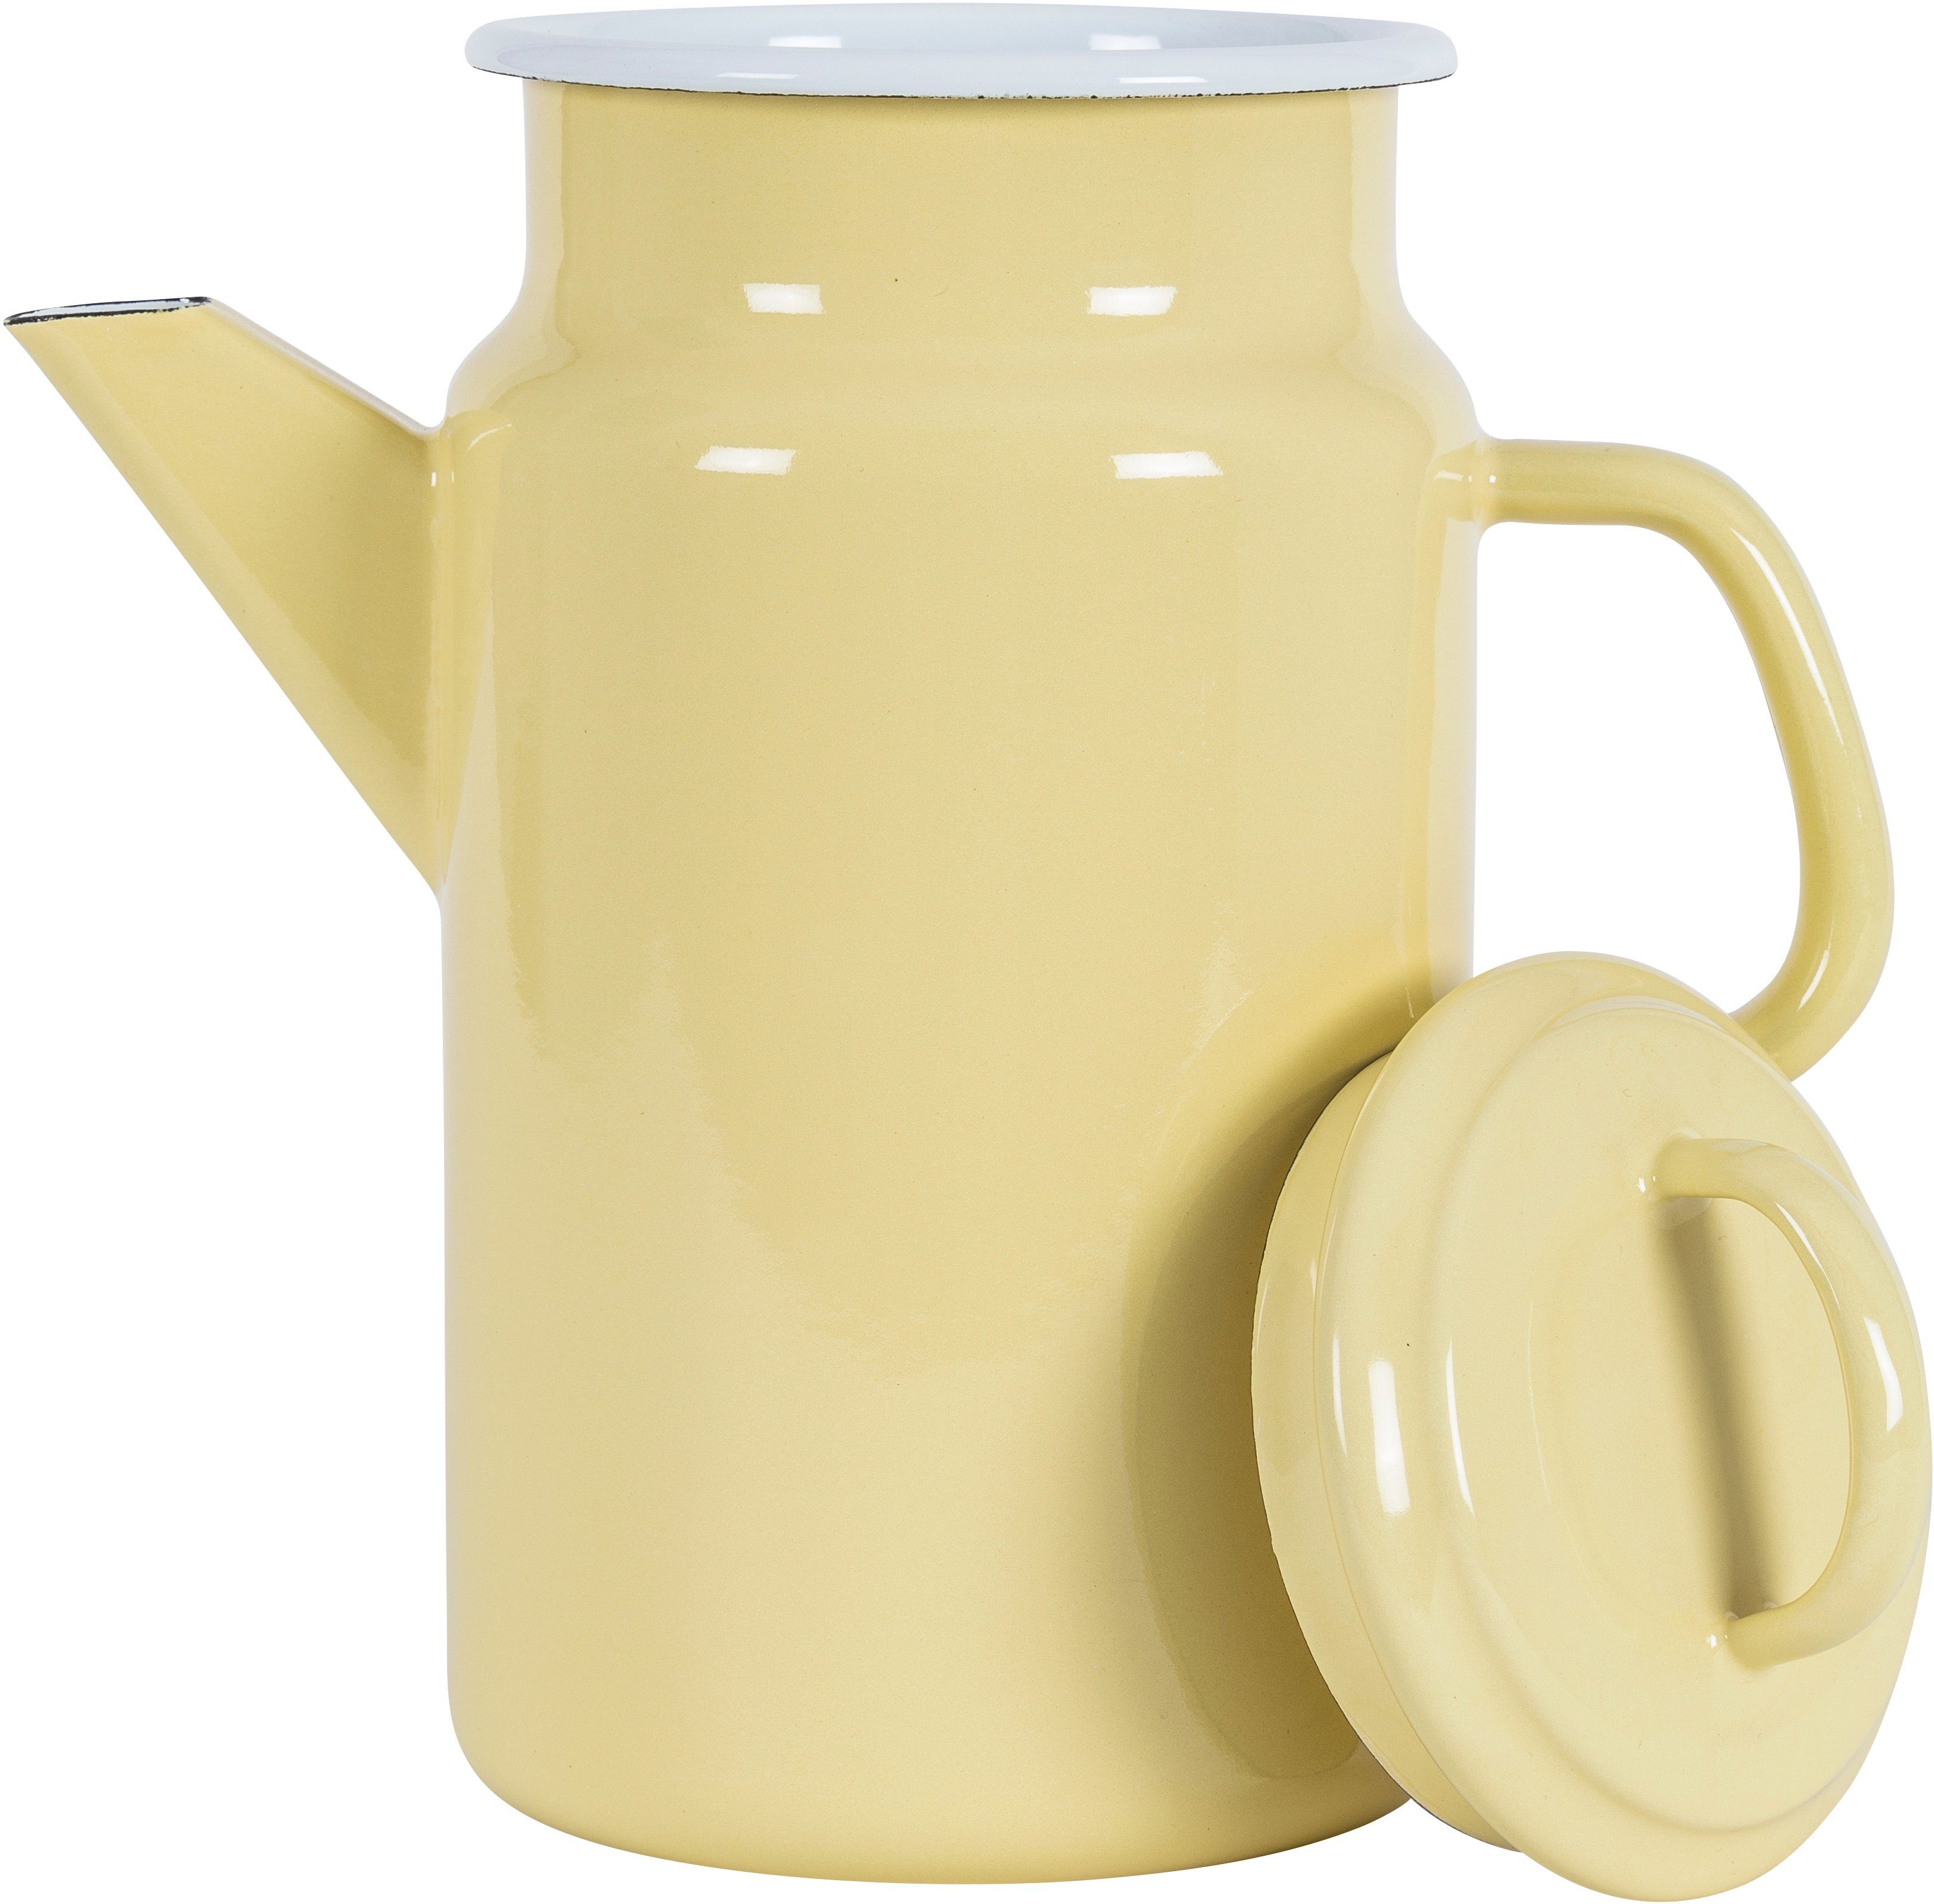 KOCKUMS® Teekanne Jernverk, 2 l, Emaille, und Retro-Design gelb Nachhaltigkeit vereint einer Teekanne in